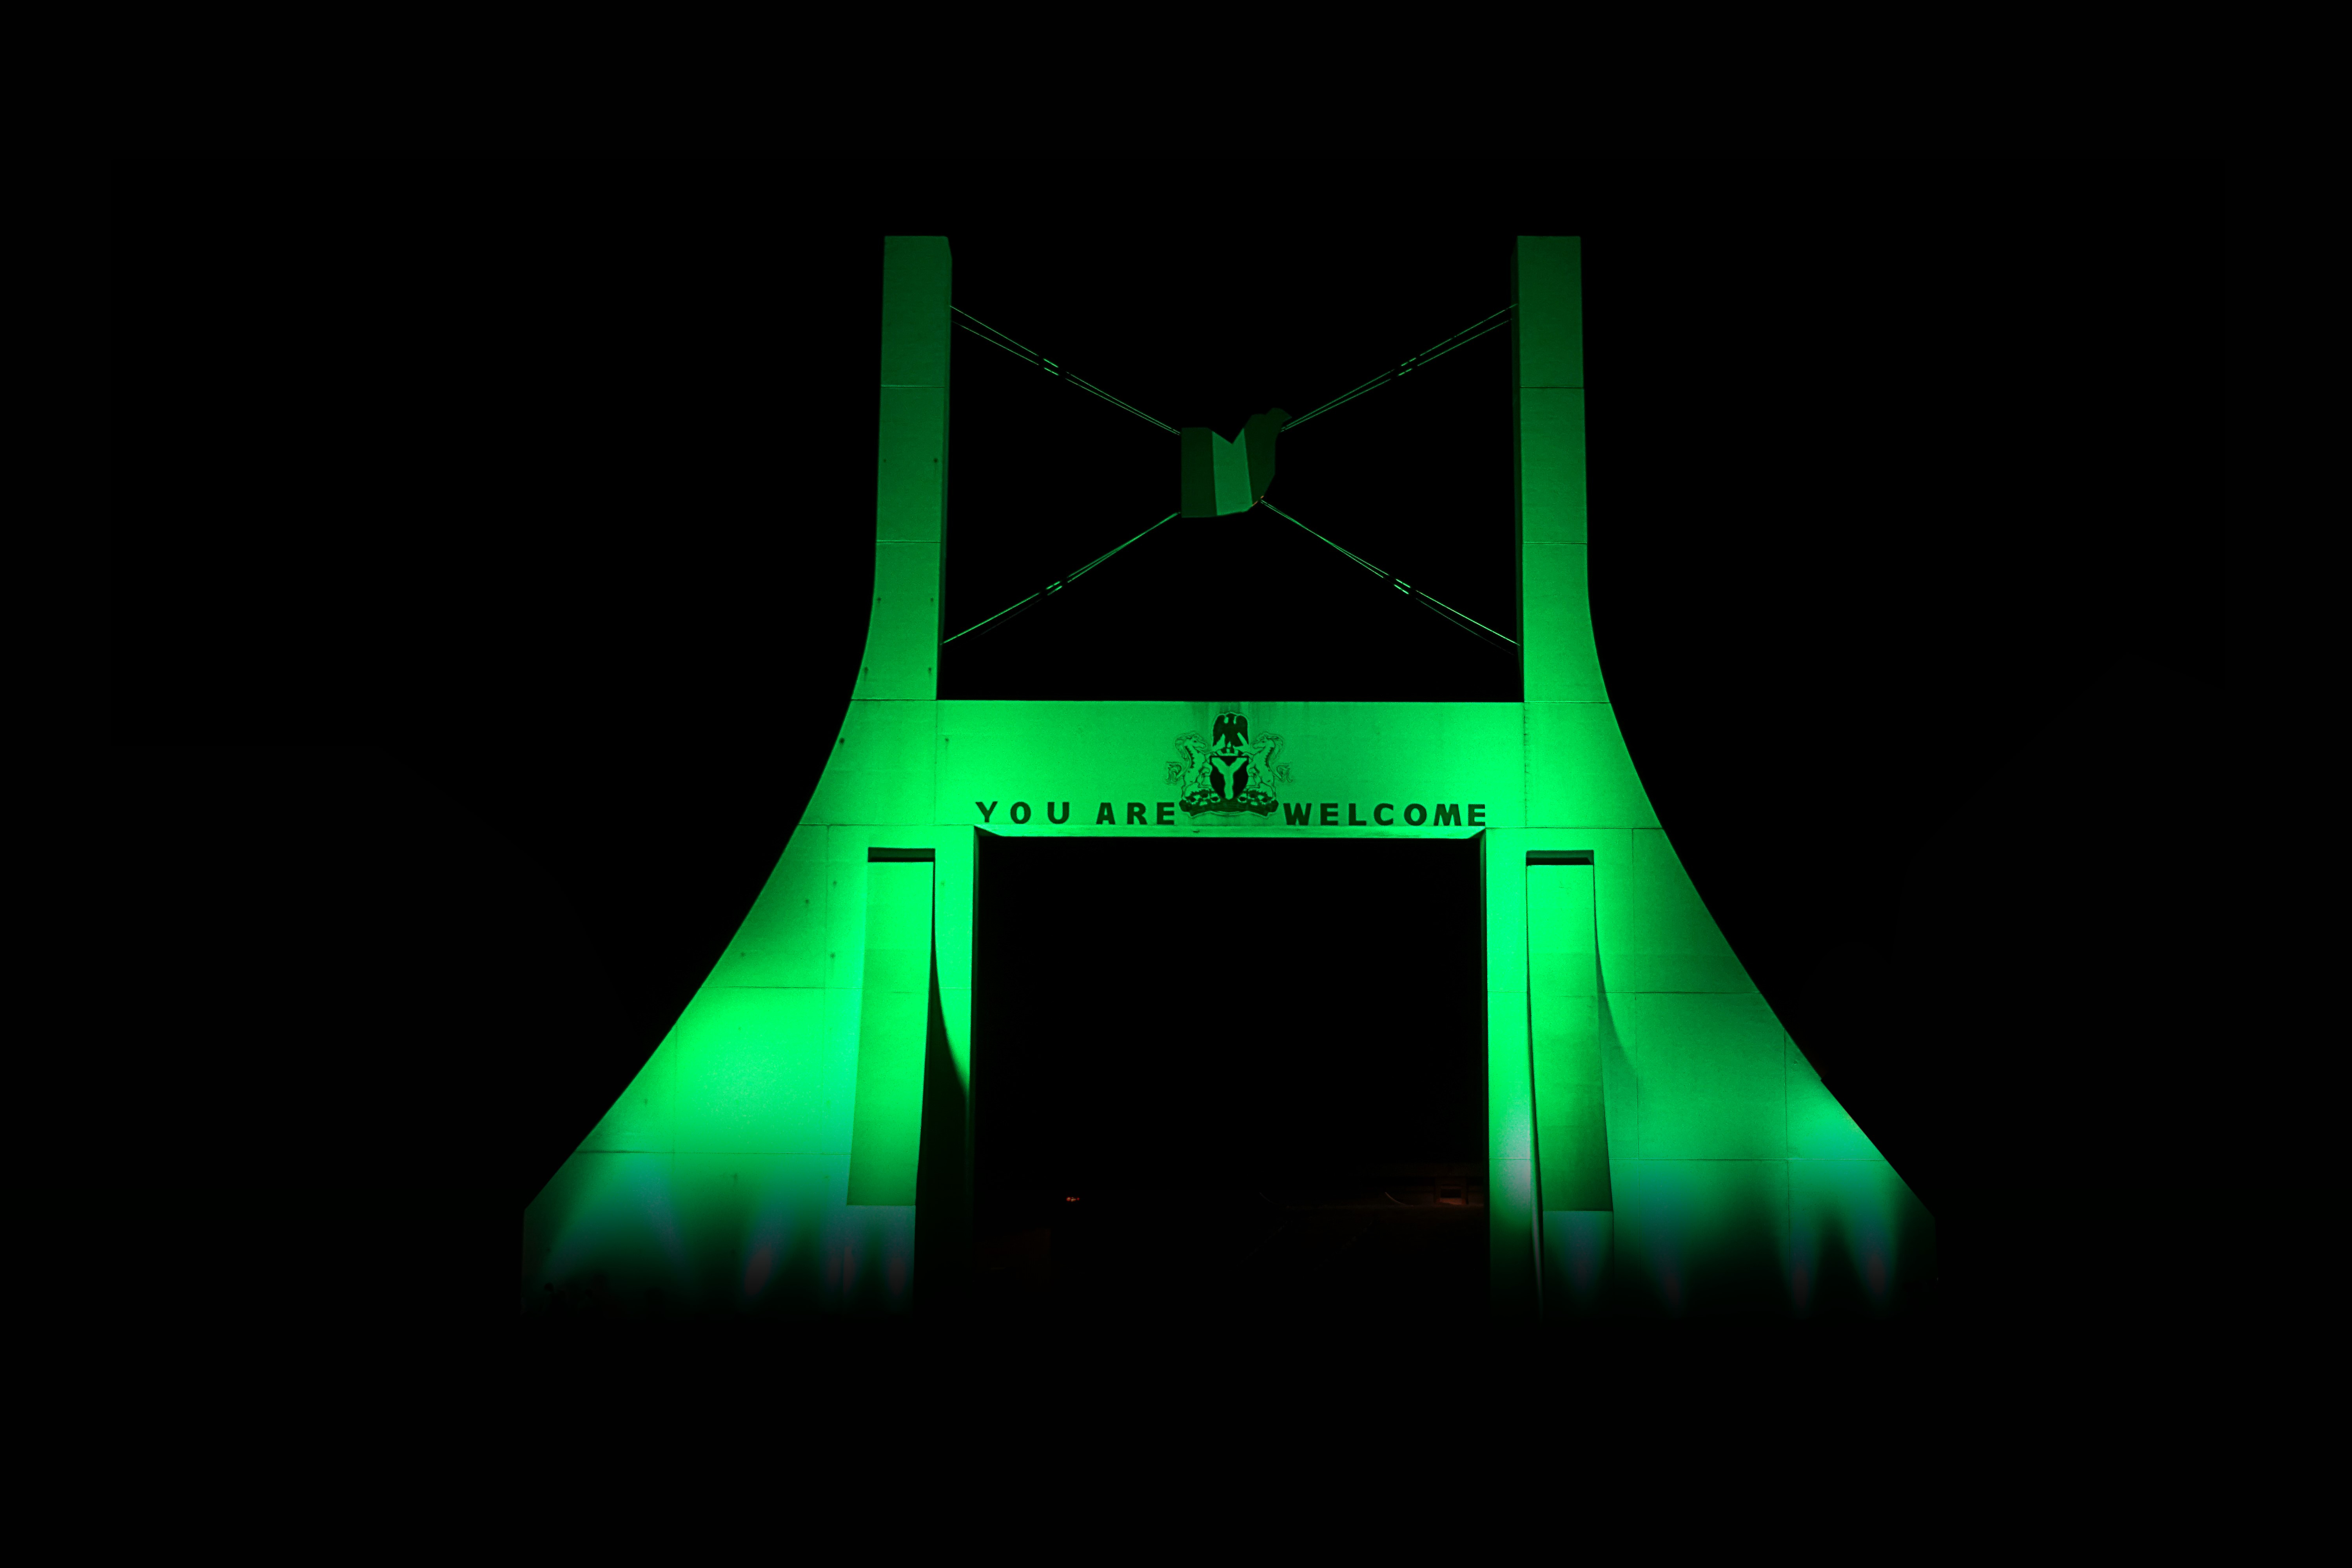 Abuja City Gate in Nigeria